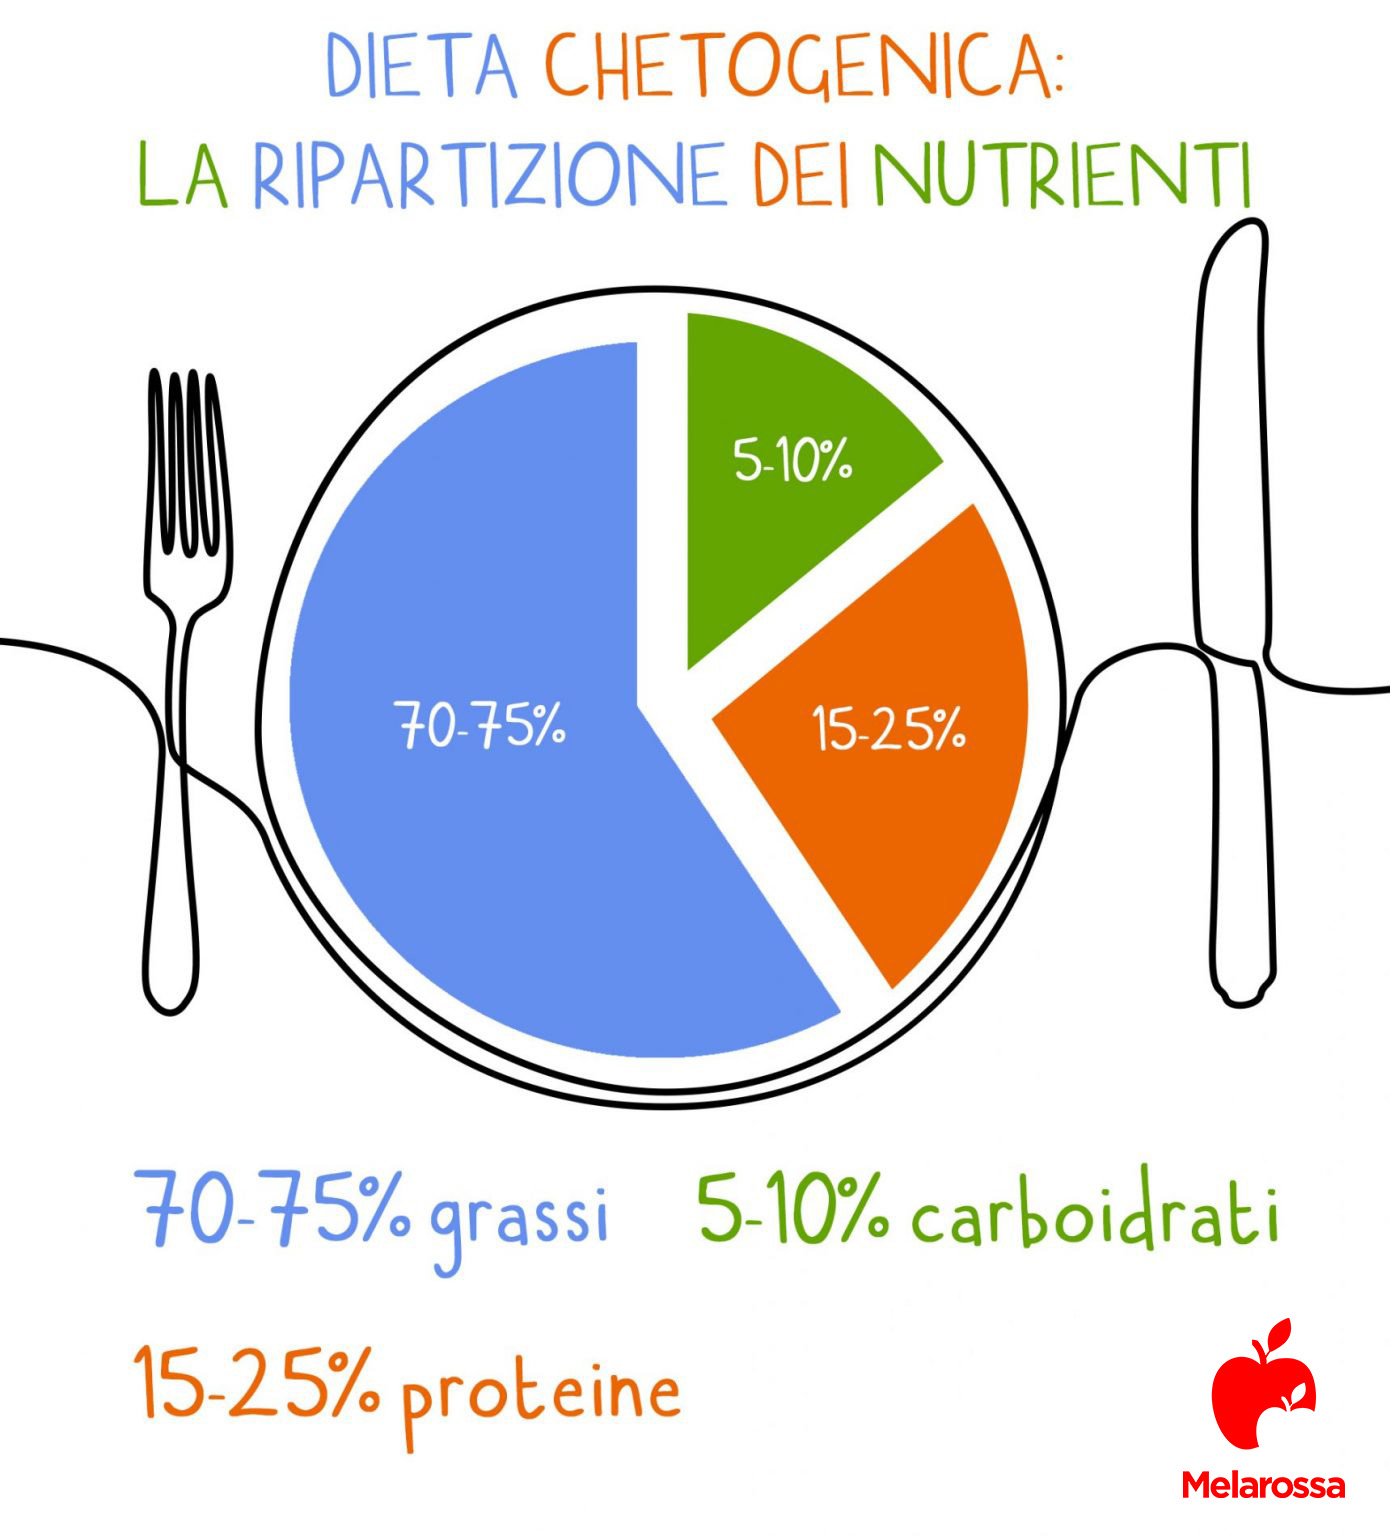 dieta chetogenica: ripartizione percentuale dei nutrienti